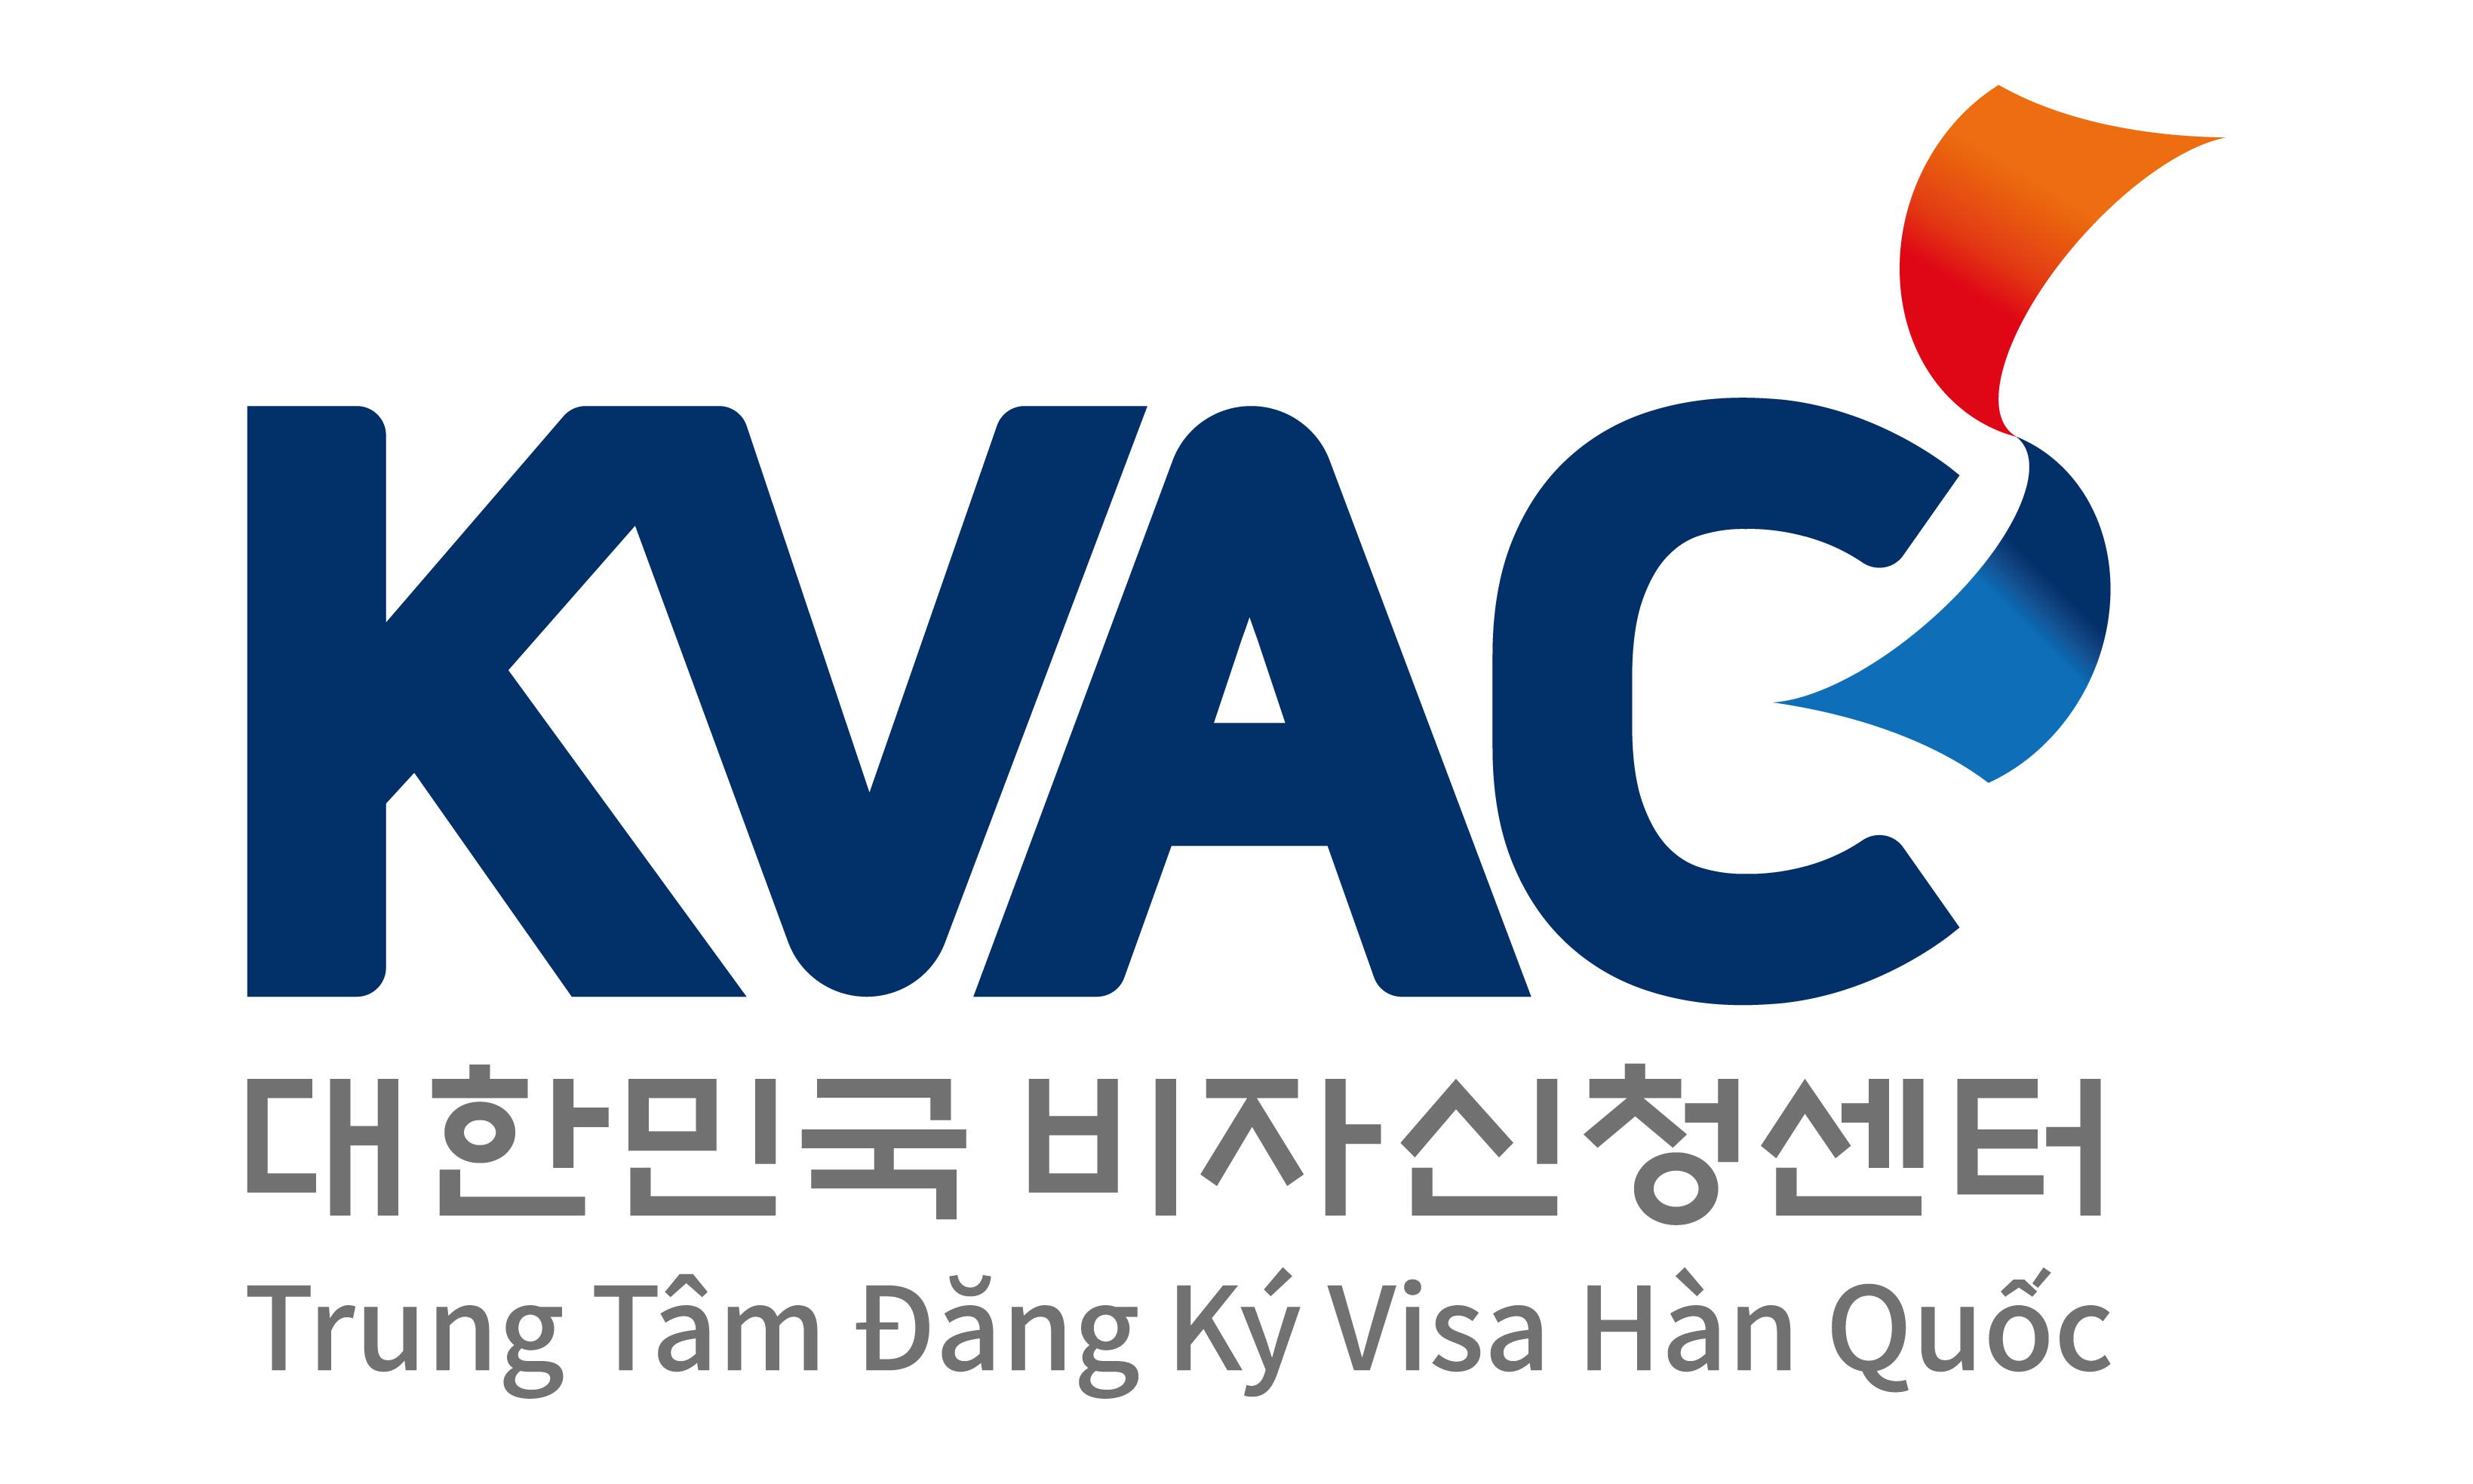 Kết quả hình ảnh cho KVAC